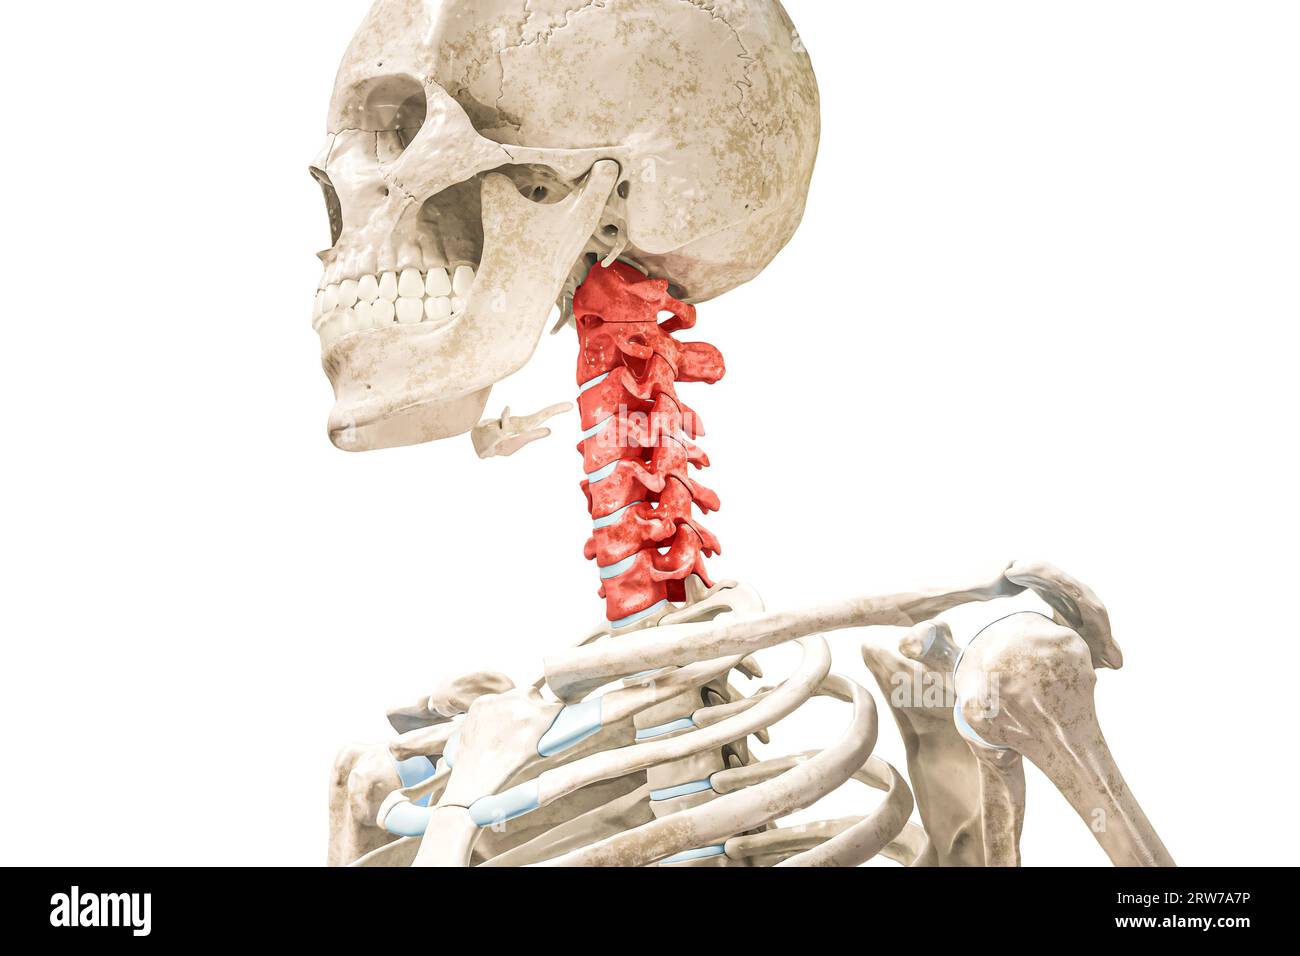 Halswirbel in roter 3D-Darstellung isoliert auf weiß. Menschliche Skelett- und Wirbelsäulenanatomie, medizinisches Diagramm, Osteologie, Skelettuntersuchung Stockfoto